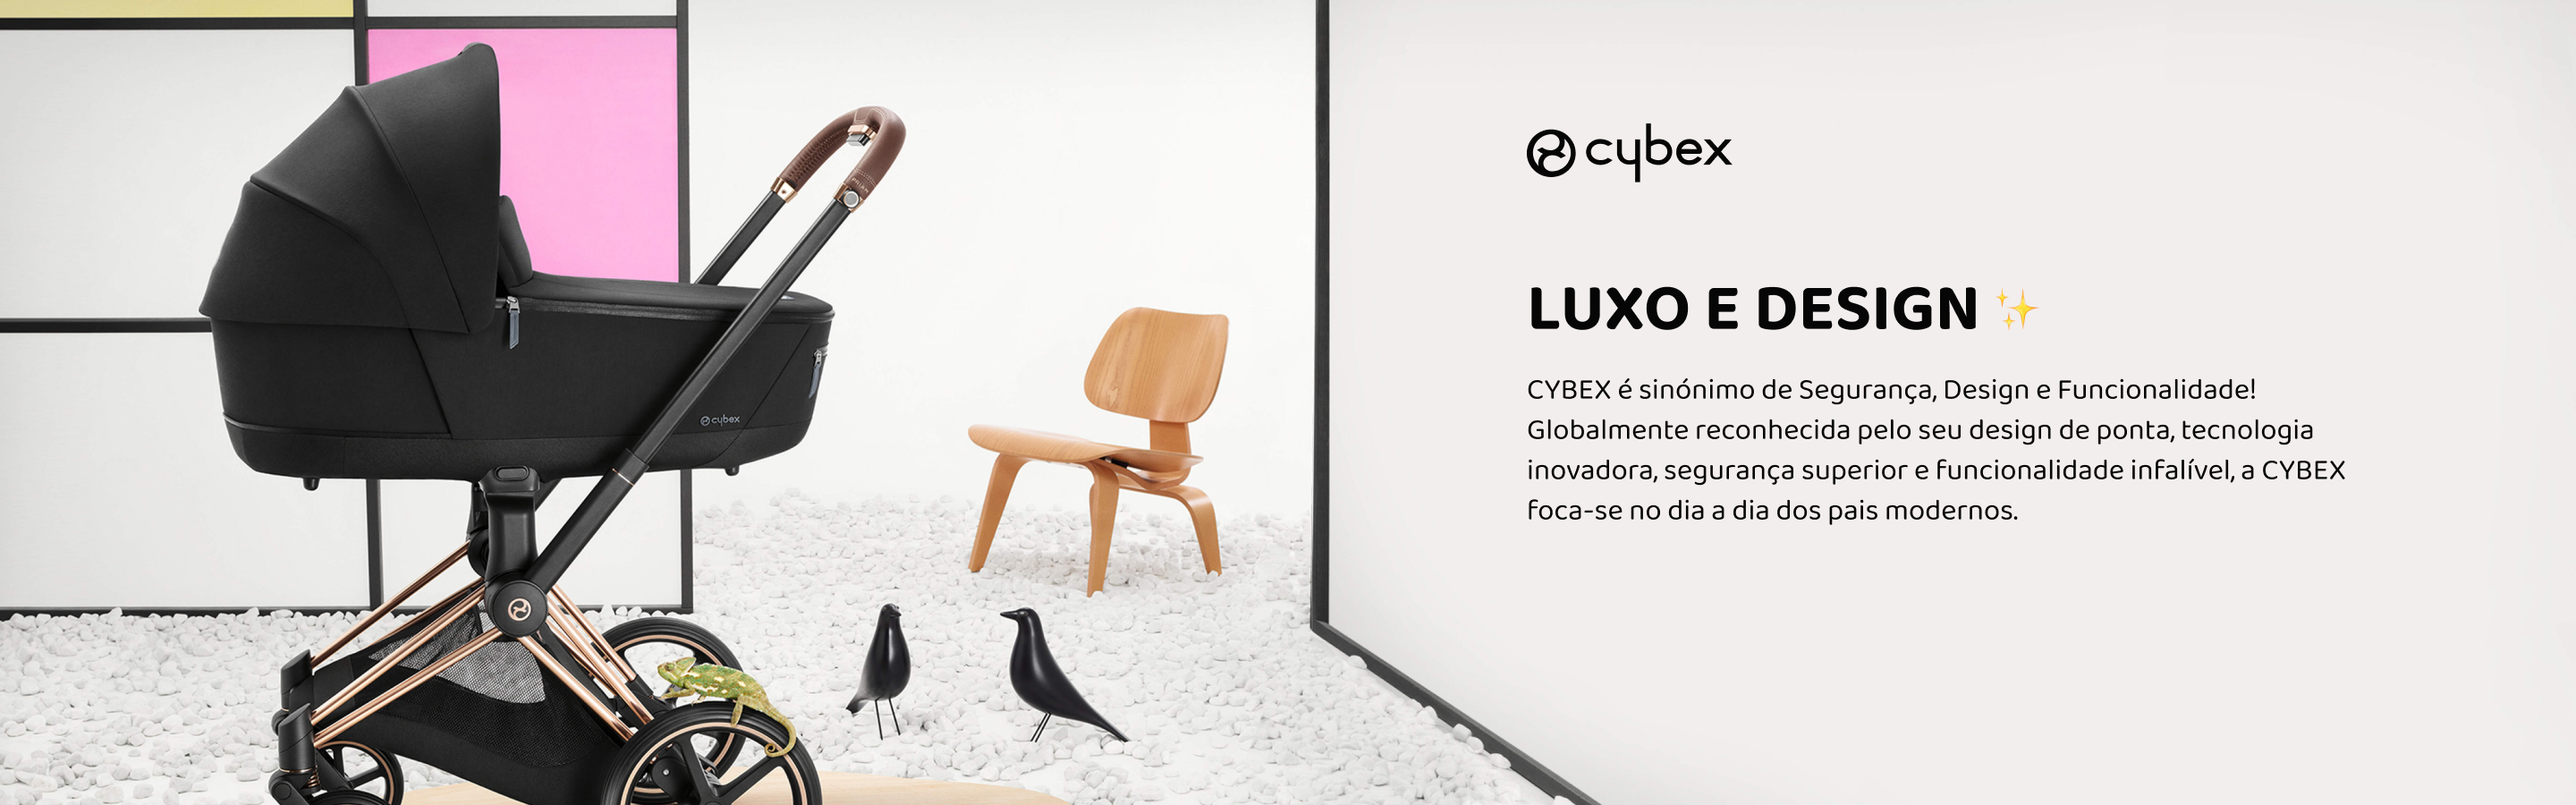 Cybex | luxo, Segurança e design